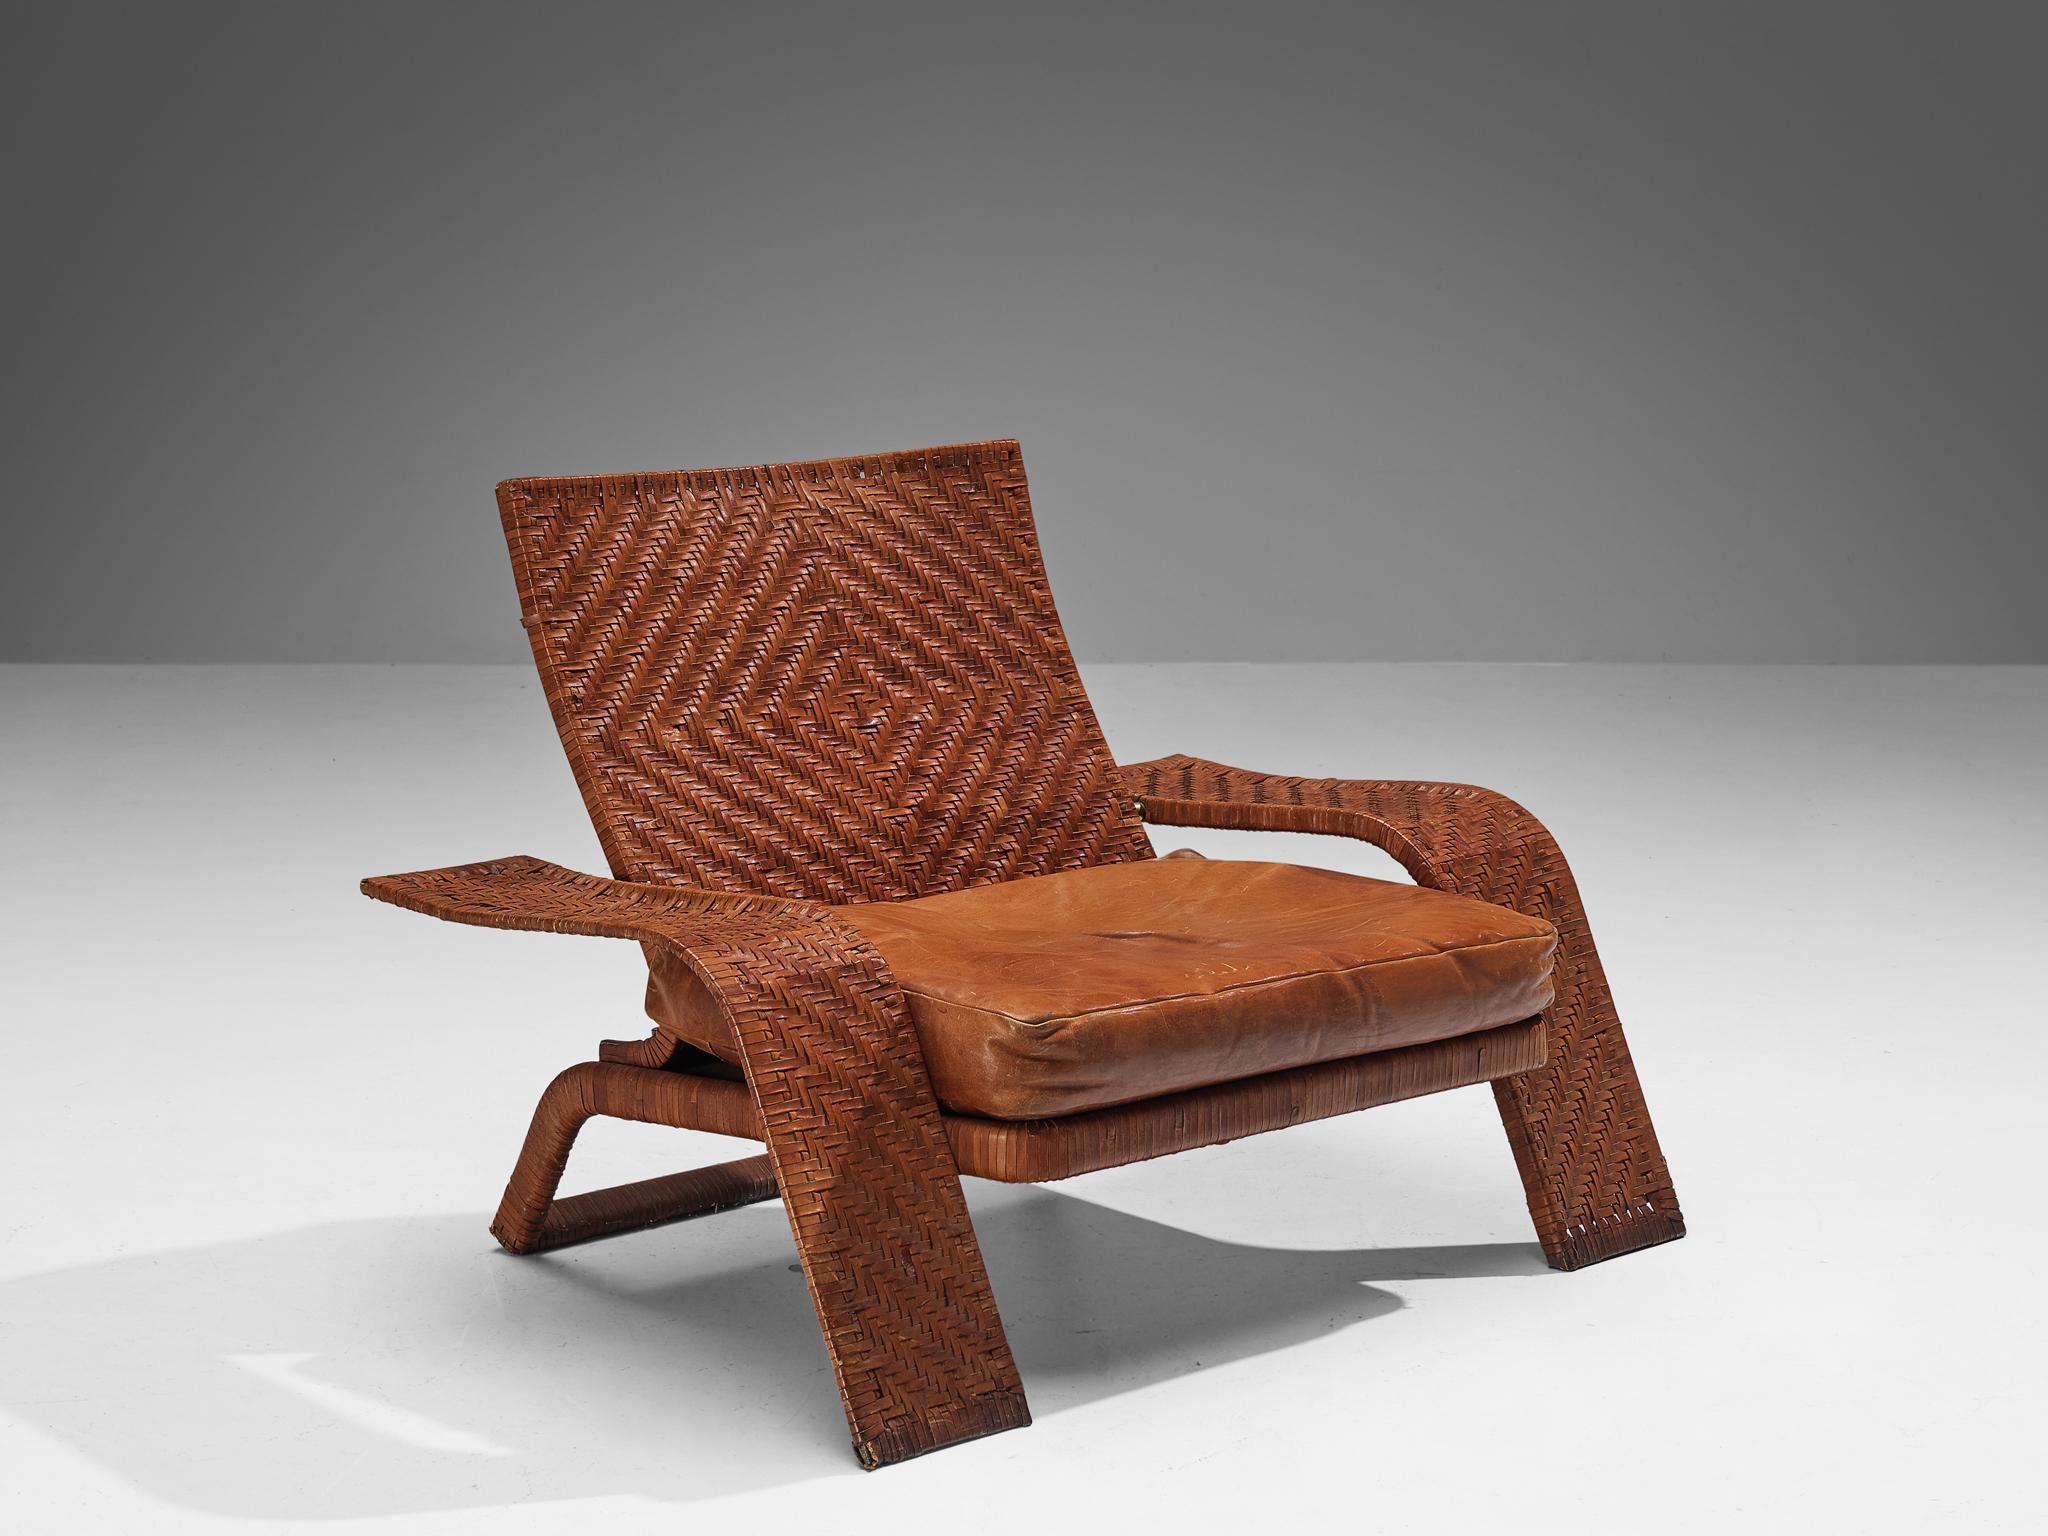 Marzio Cecchi pour Studio Most, chaise longue, cuir, laiton, Italie, années 1970. 

Rare chaise longue conçue par Marzio Cecchi pour Studio Most. Une caractéristique de ce meuble raffiné est le revêtement en cuir tressé du cadre qui présente une